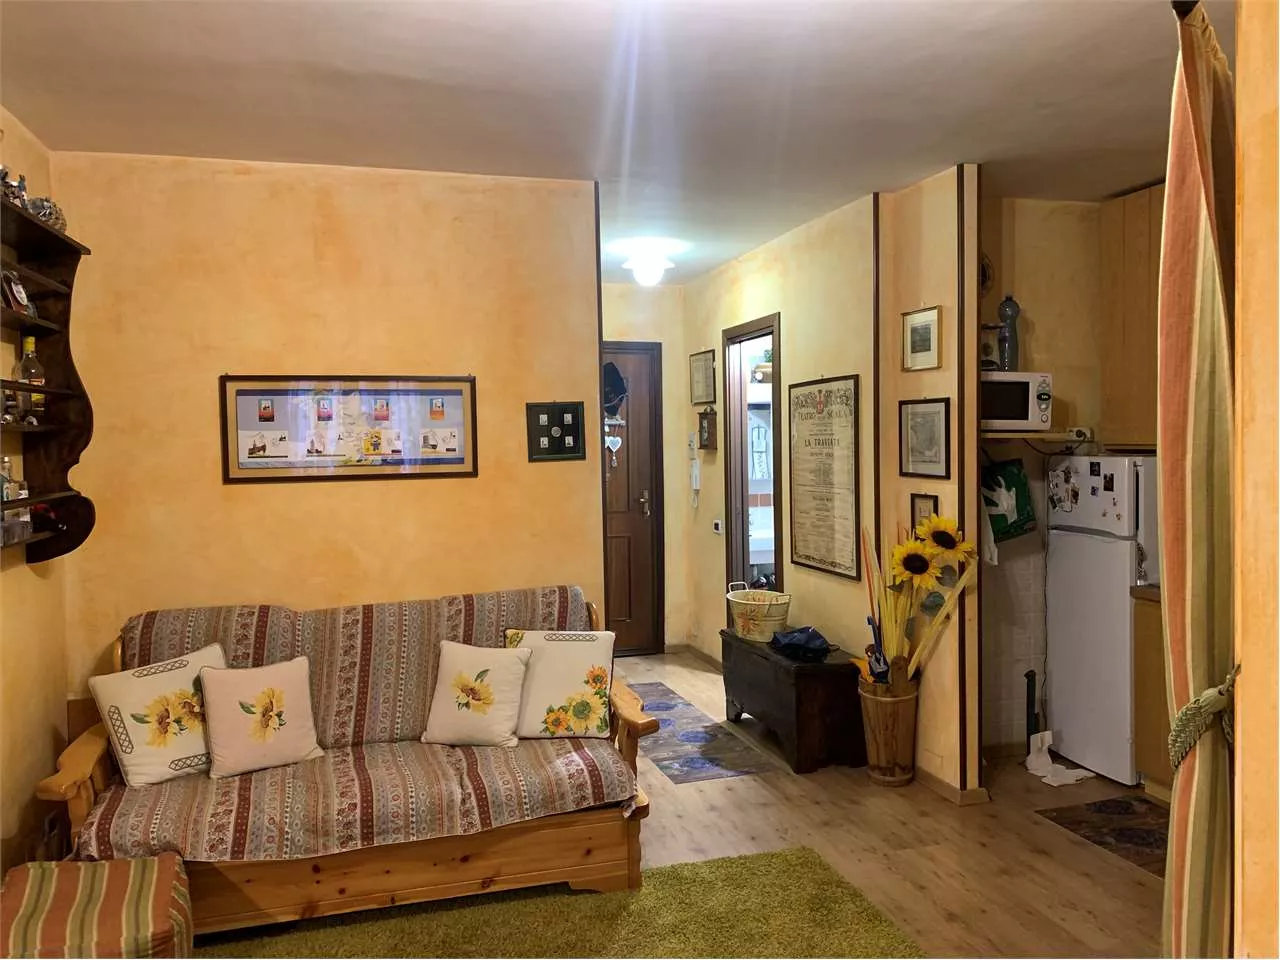 Immagine per Appartamento in vendita a Bardonecchia via Montenero 31